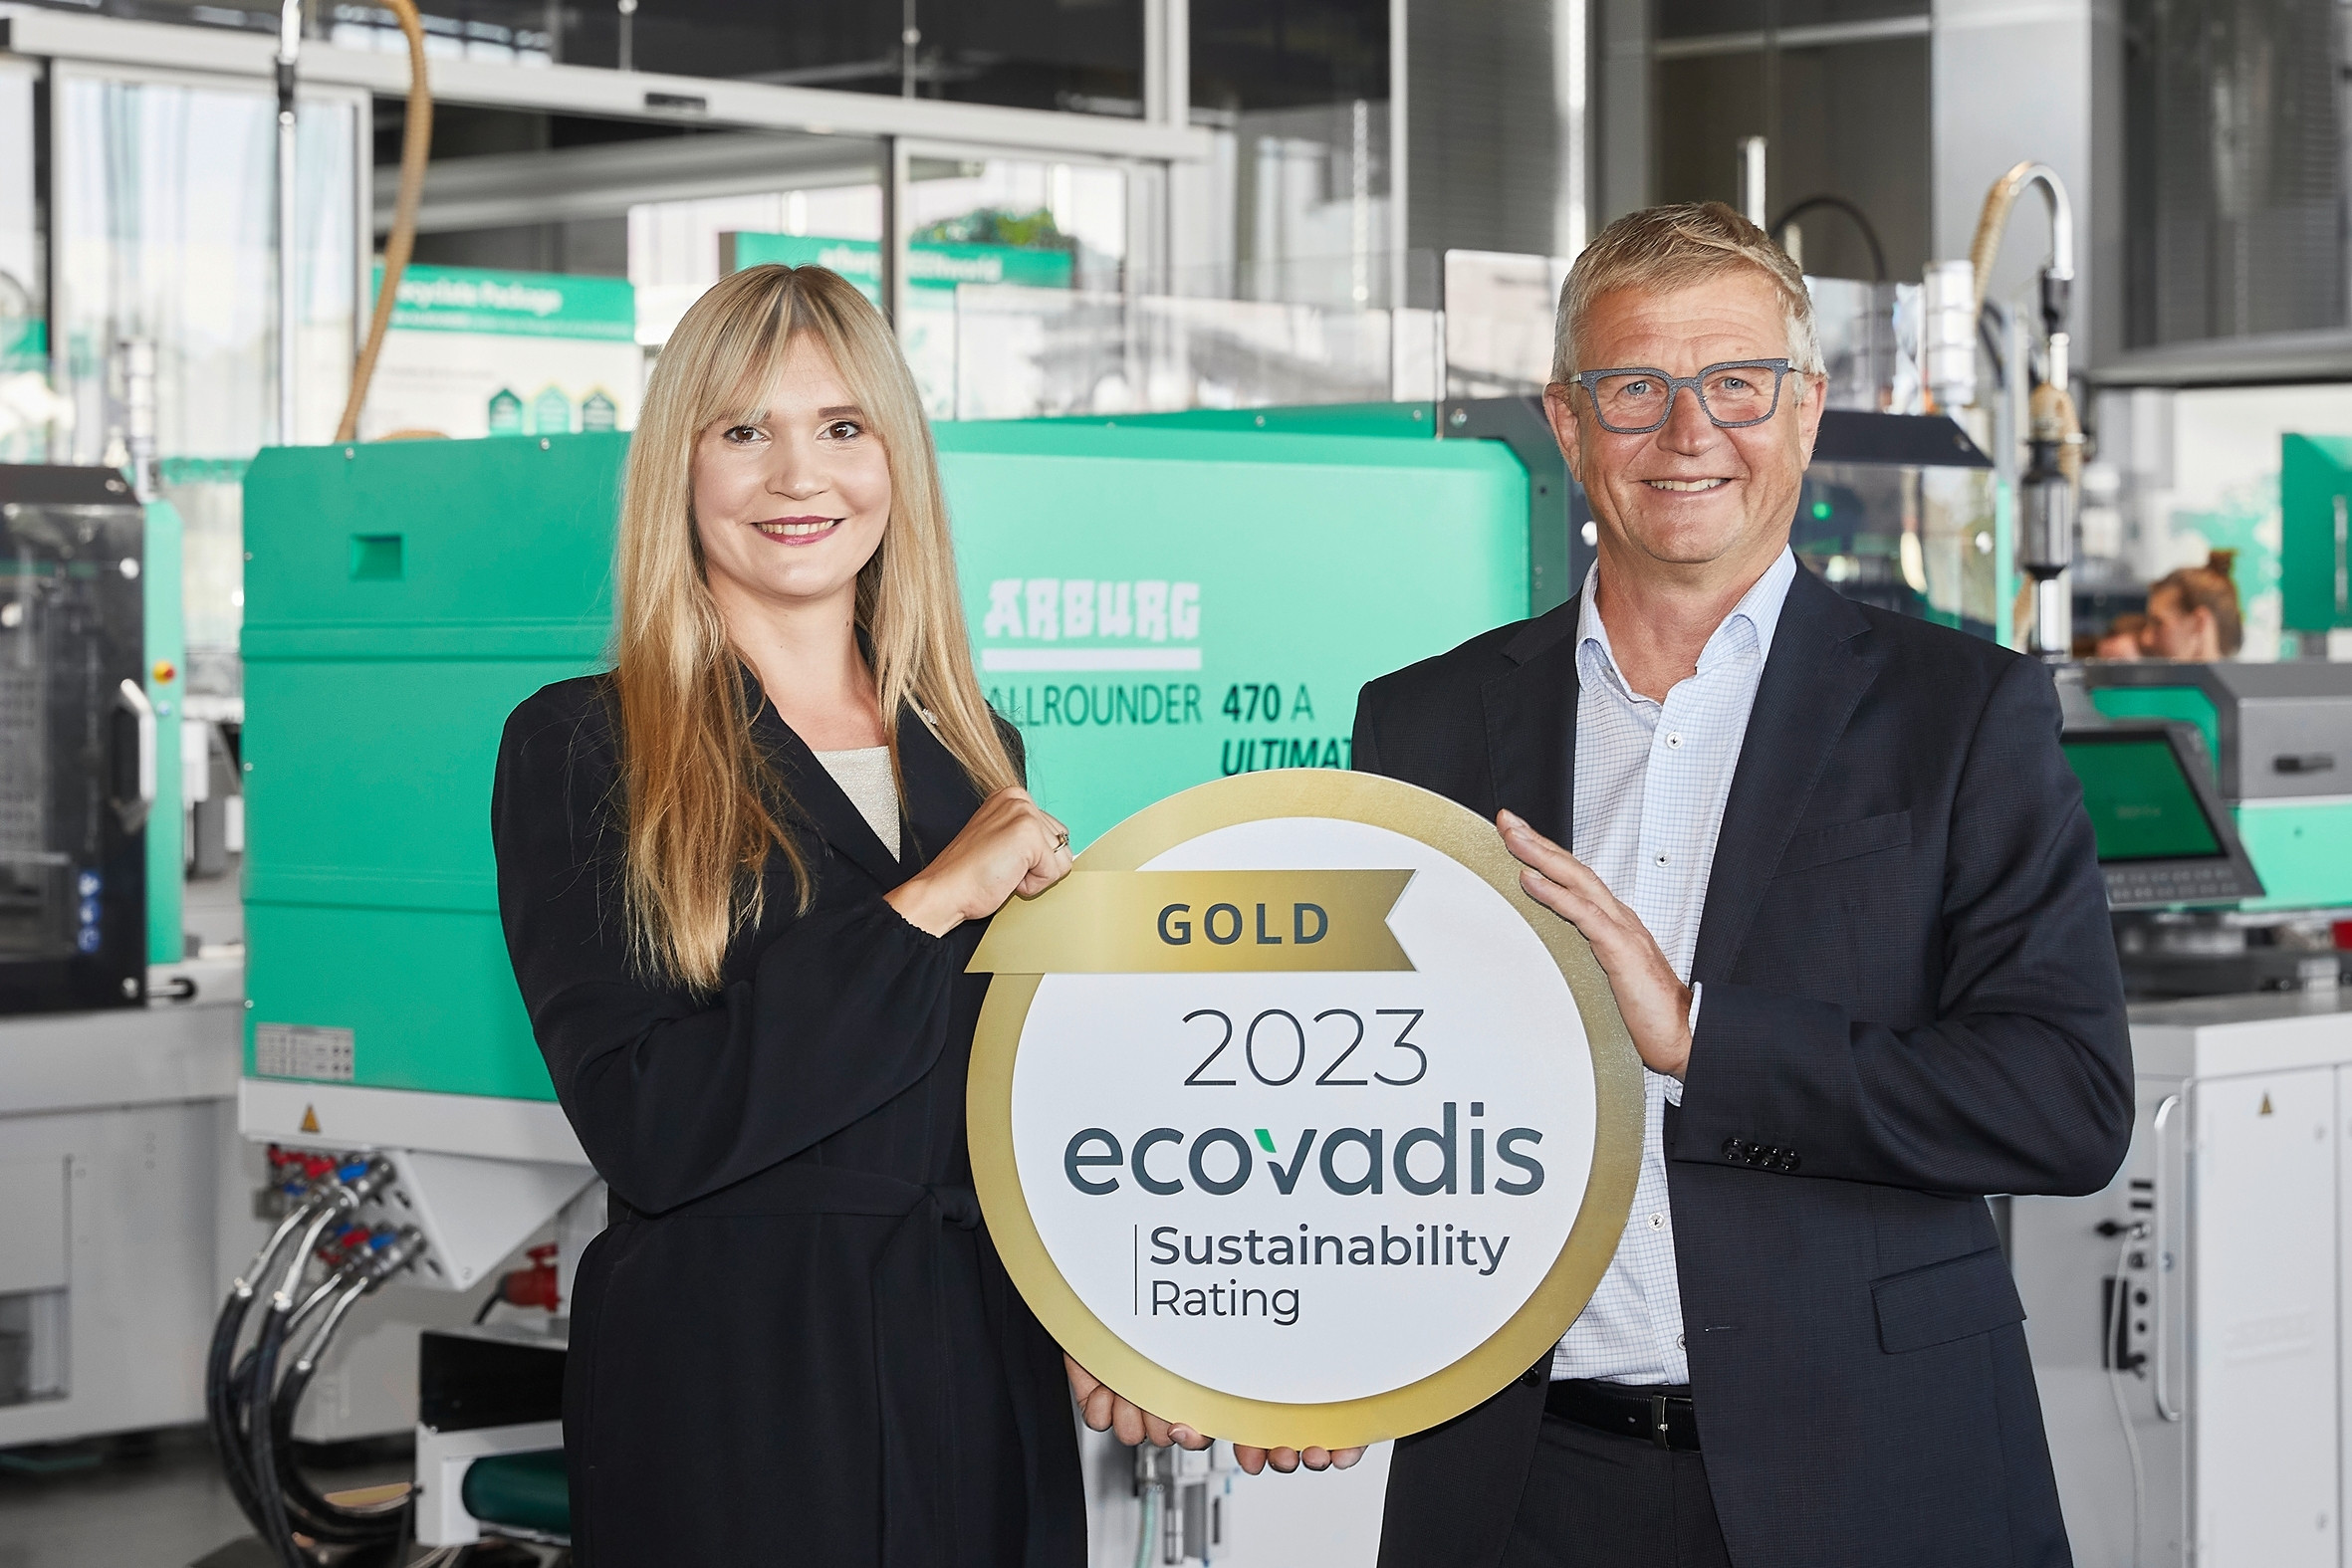 Sind stolz auf die Auszeichnung von Ecovadis in Gold: Gerhard Böhm, Arburg-Geschäftsführer Vertrieb und After Sales, und Samira Uharek, Sustainability Managerin bei Arburg.